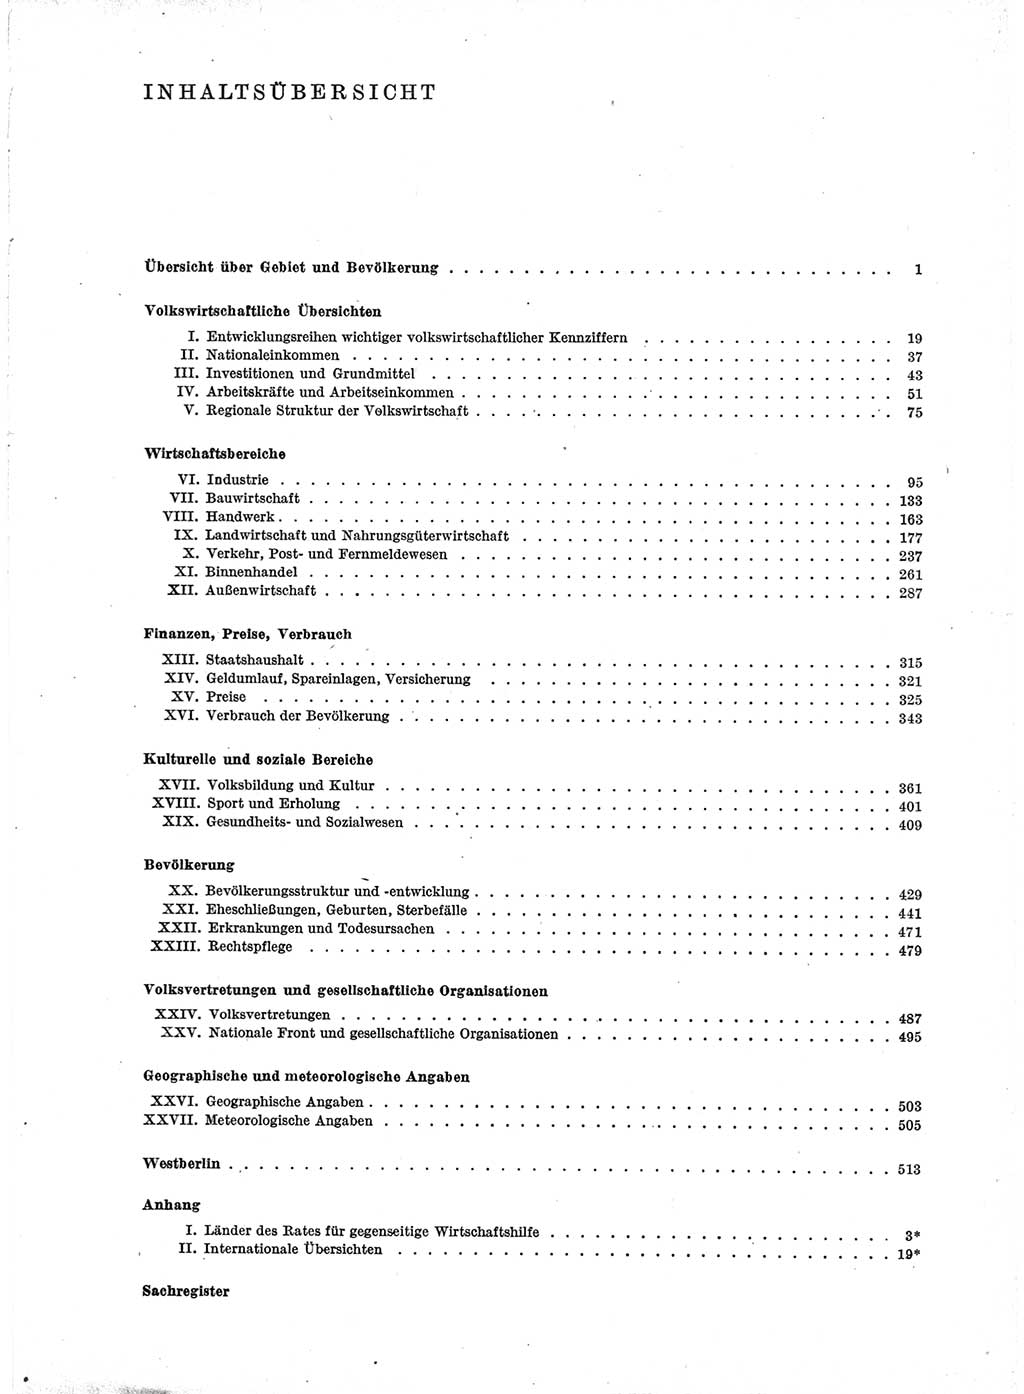 Statistisches Jahrbuch der Deutschen Demokratischen Republik (DDR) 1971, Seite 5 (Stat. Jb. DDR 1971, S. 5)